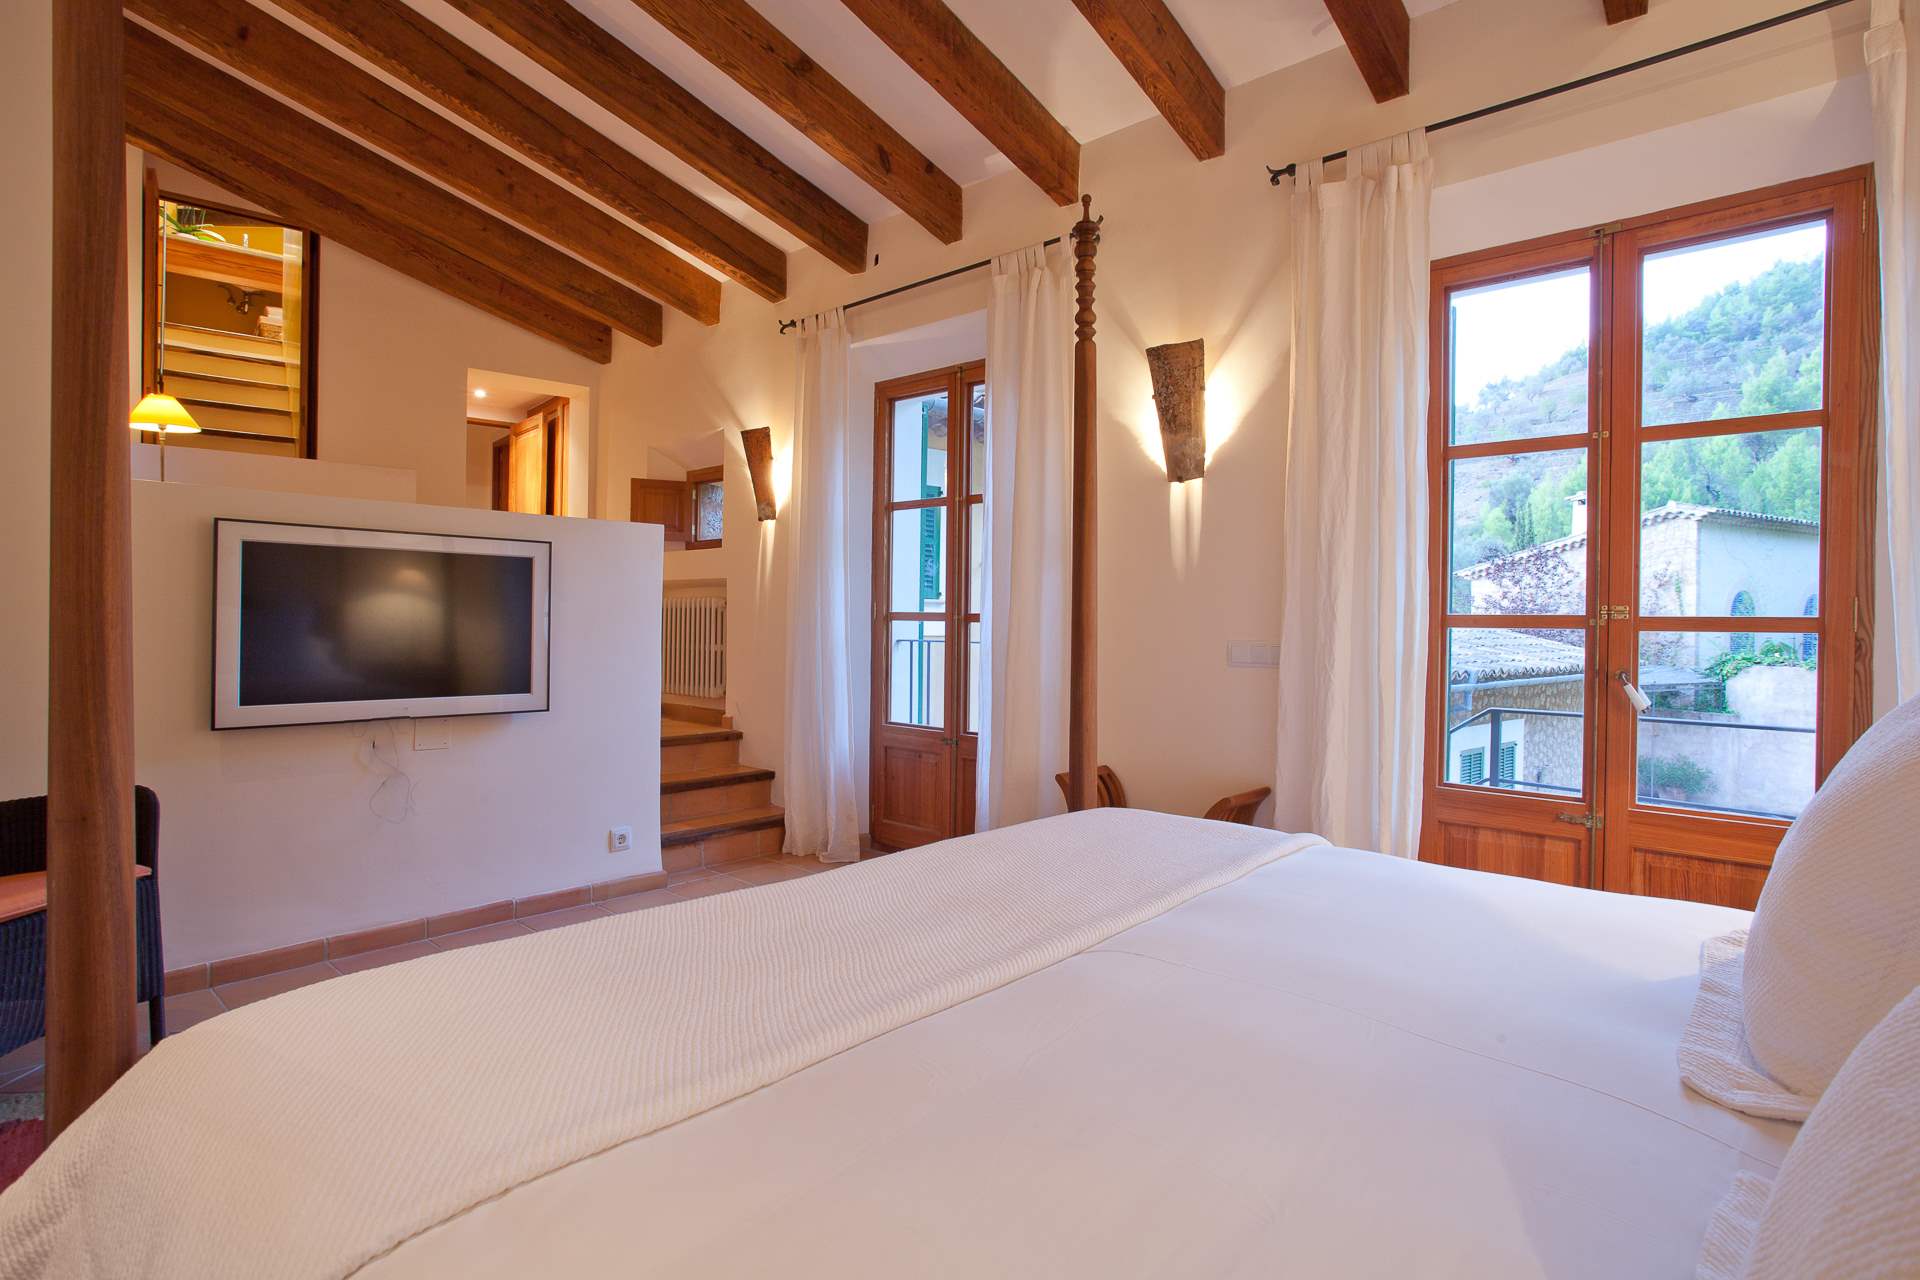 Sa Tanca, 4 Bedroom Rental, 4 bedroom villa in Soller & Deia, Majorca Photo #27